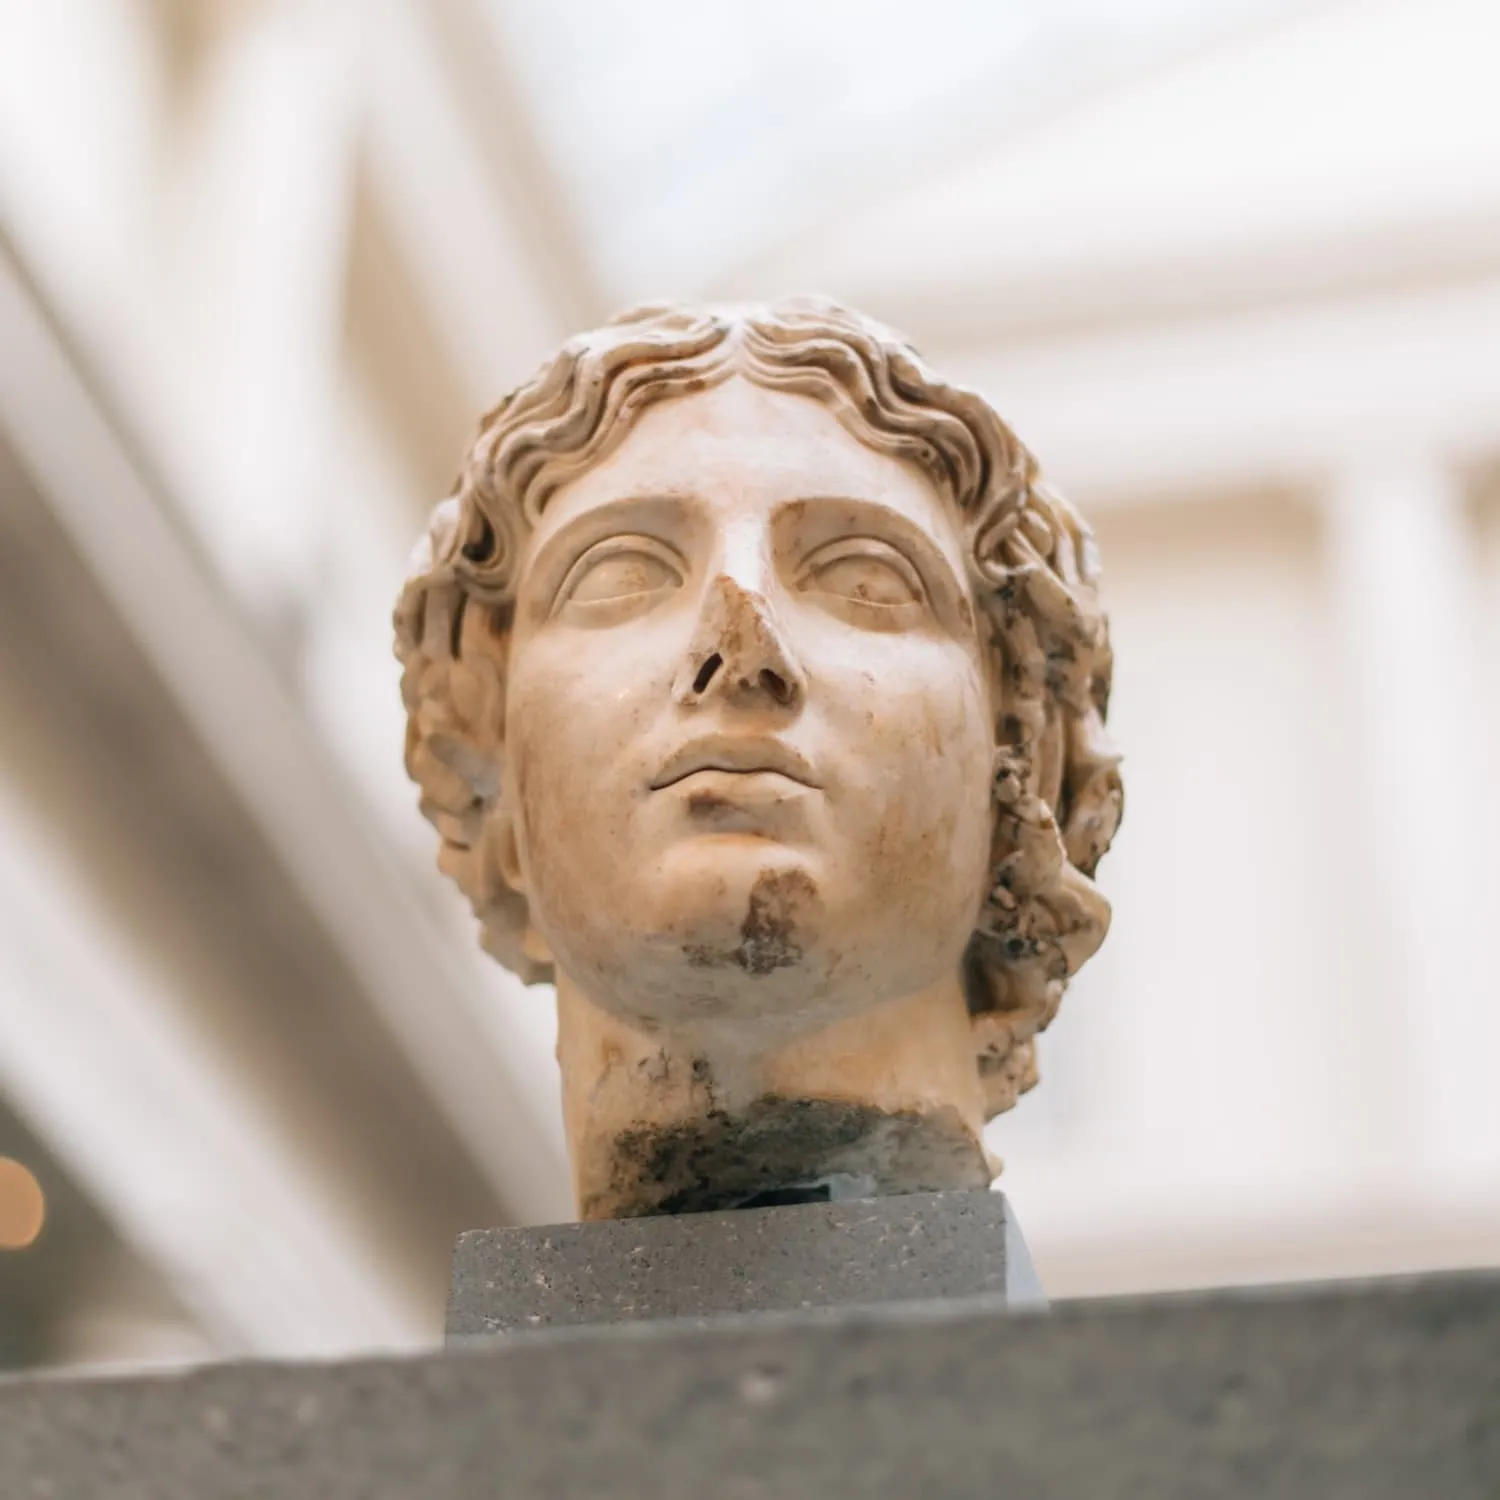 Sculpture of a young Grecian head